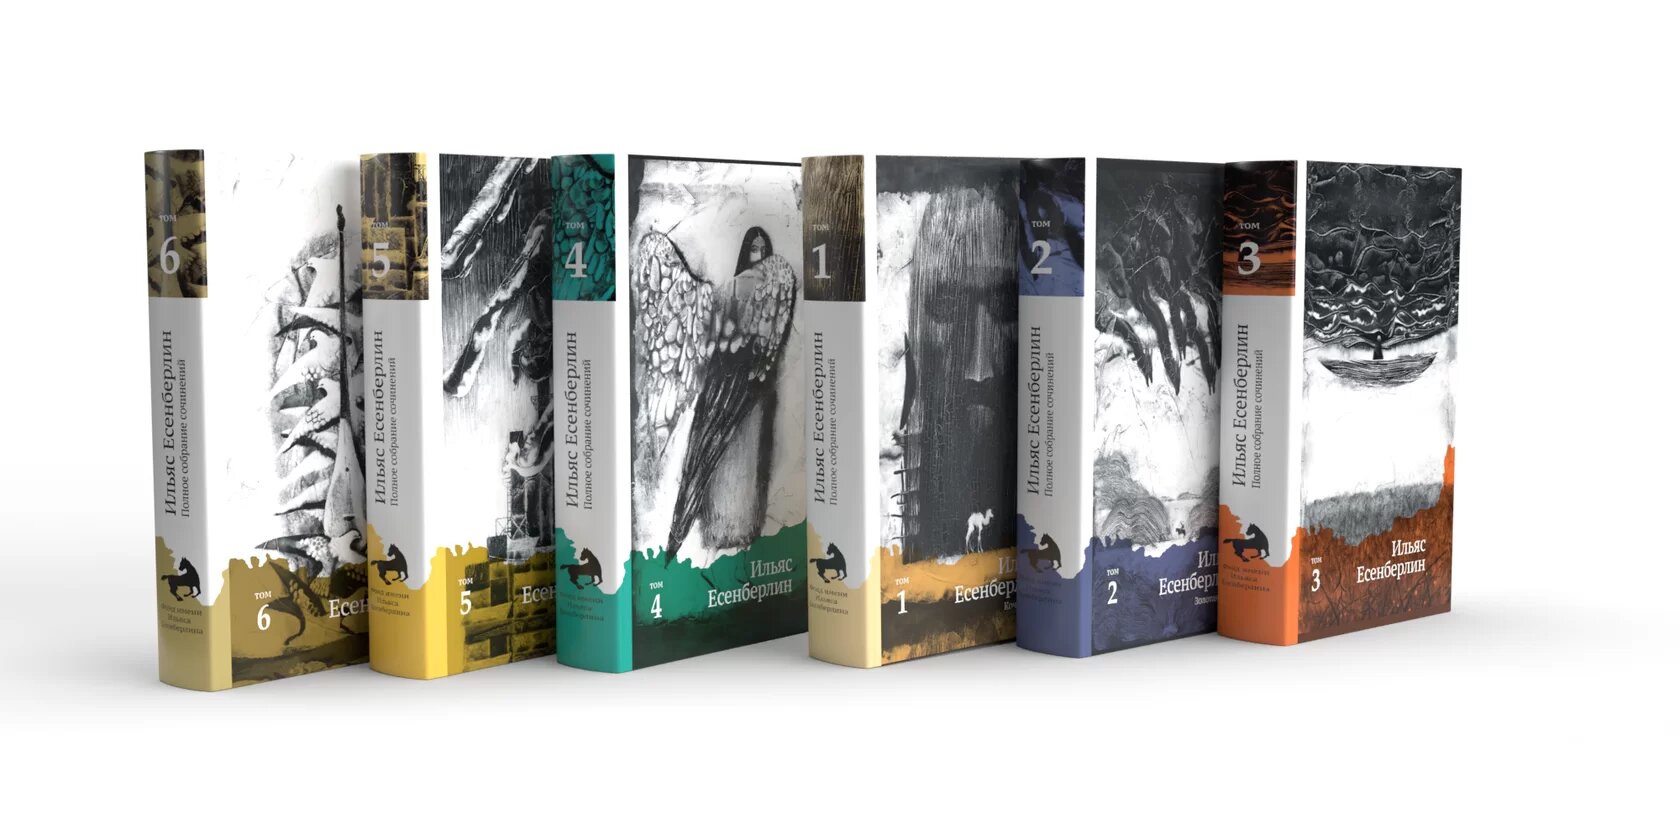 Ілияс Есенберлиннің 6 томдық шығармалар жинағы жарық көрді